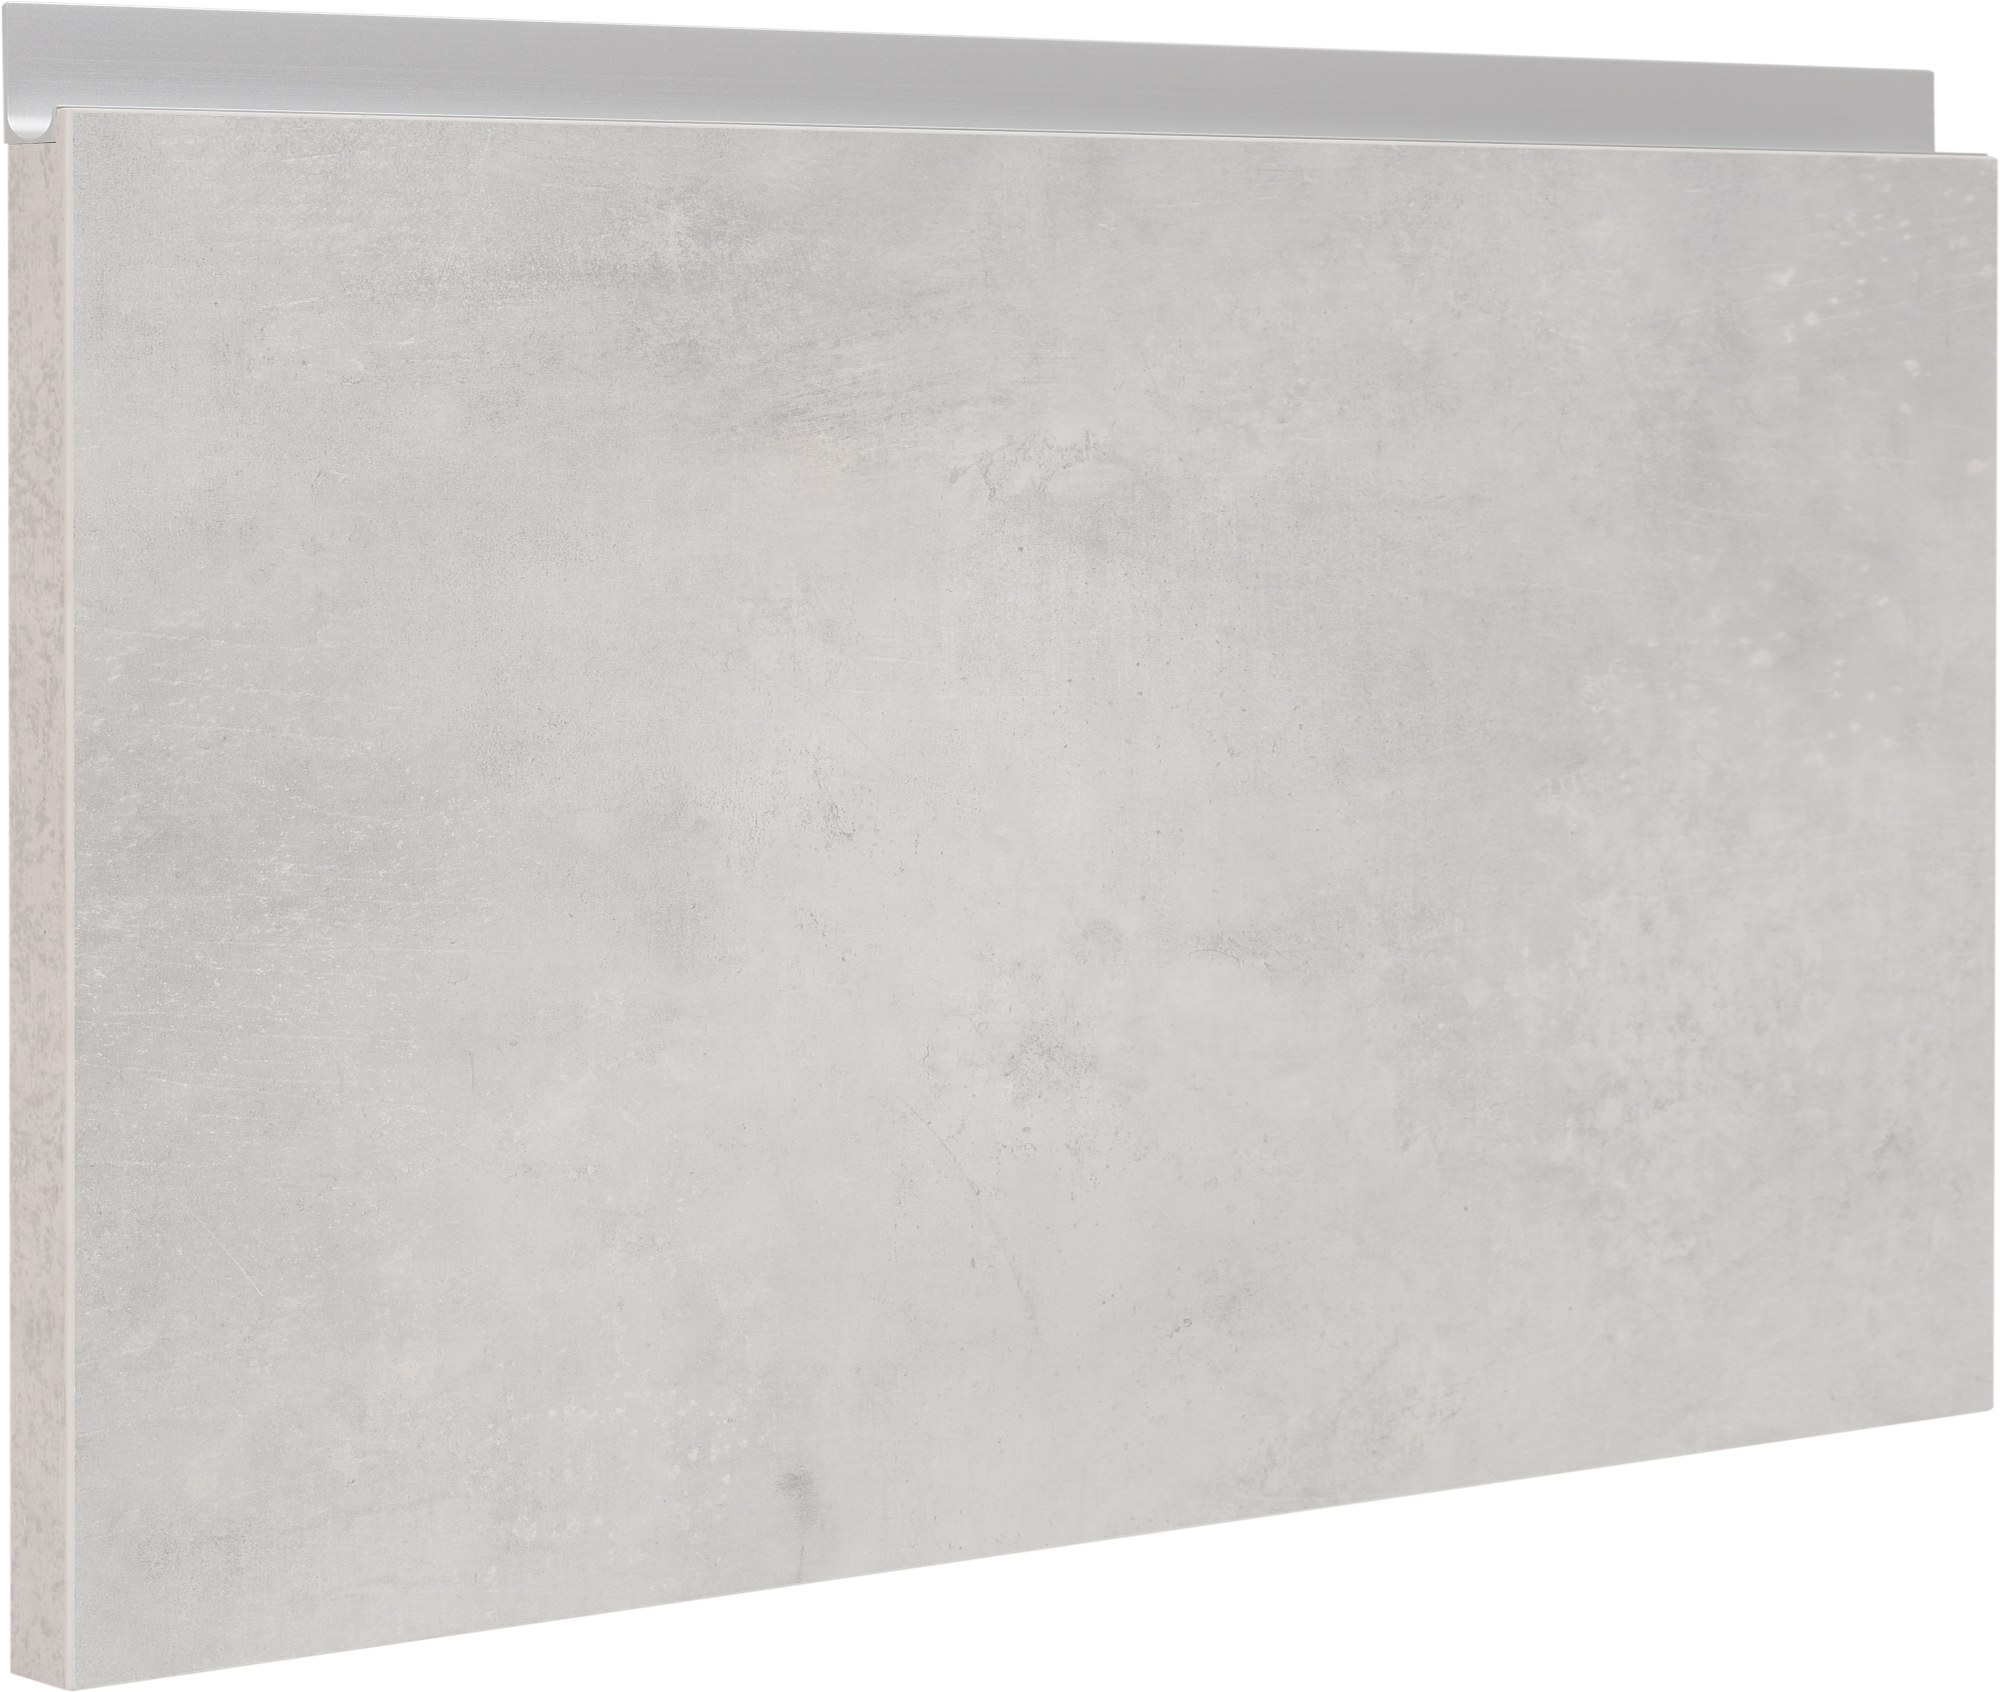 Frente para mueble de cocina mikonos cemento claro 38,4x60 cm